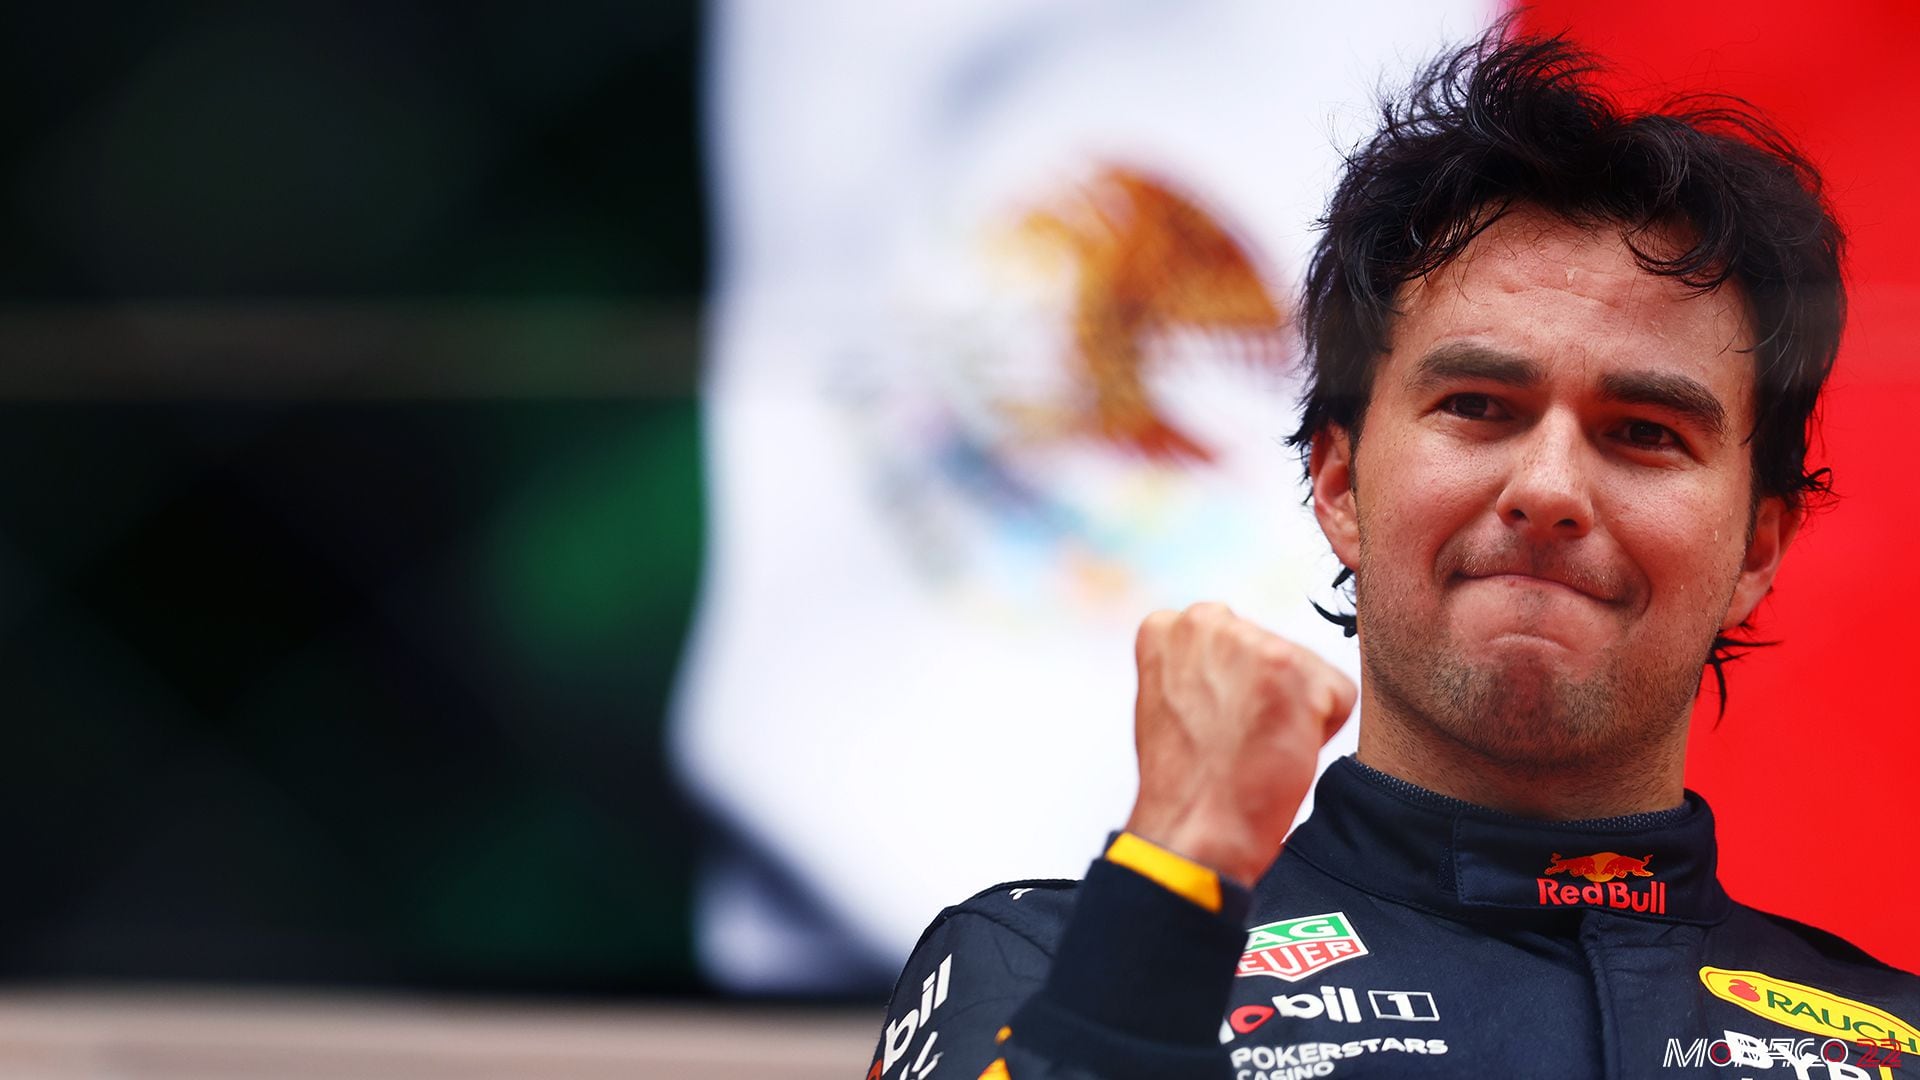 Lágrimas de victoria: Le gana emoción a ‘Checo’ Pérez en el podio del GP de Mónaco